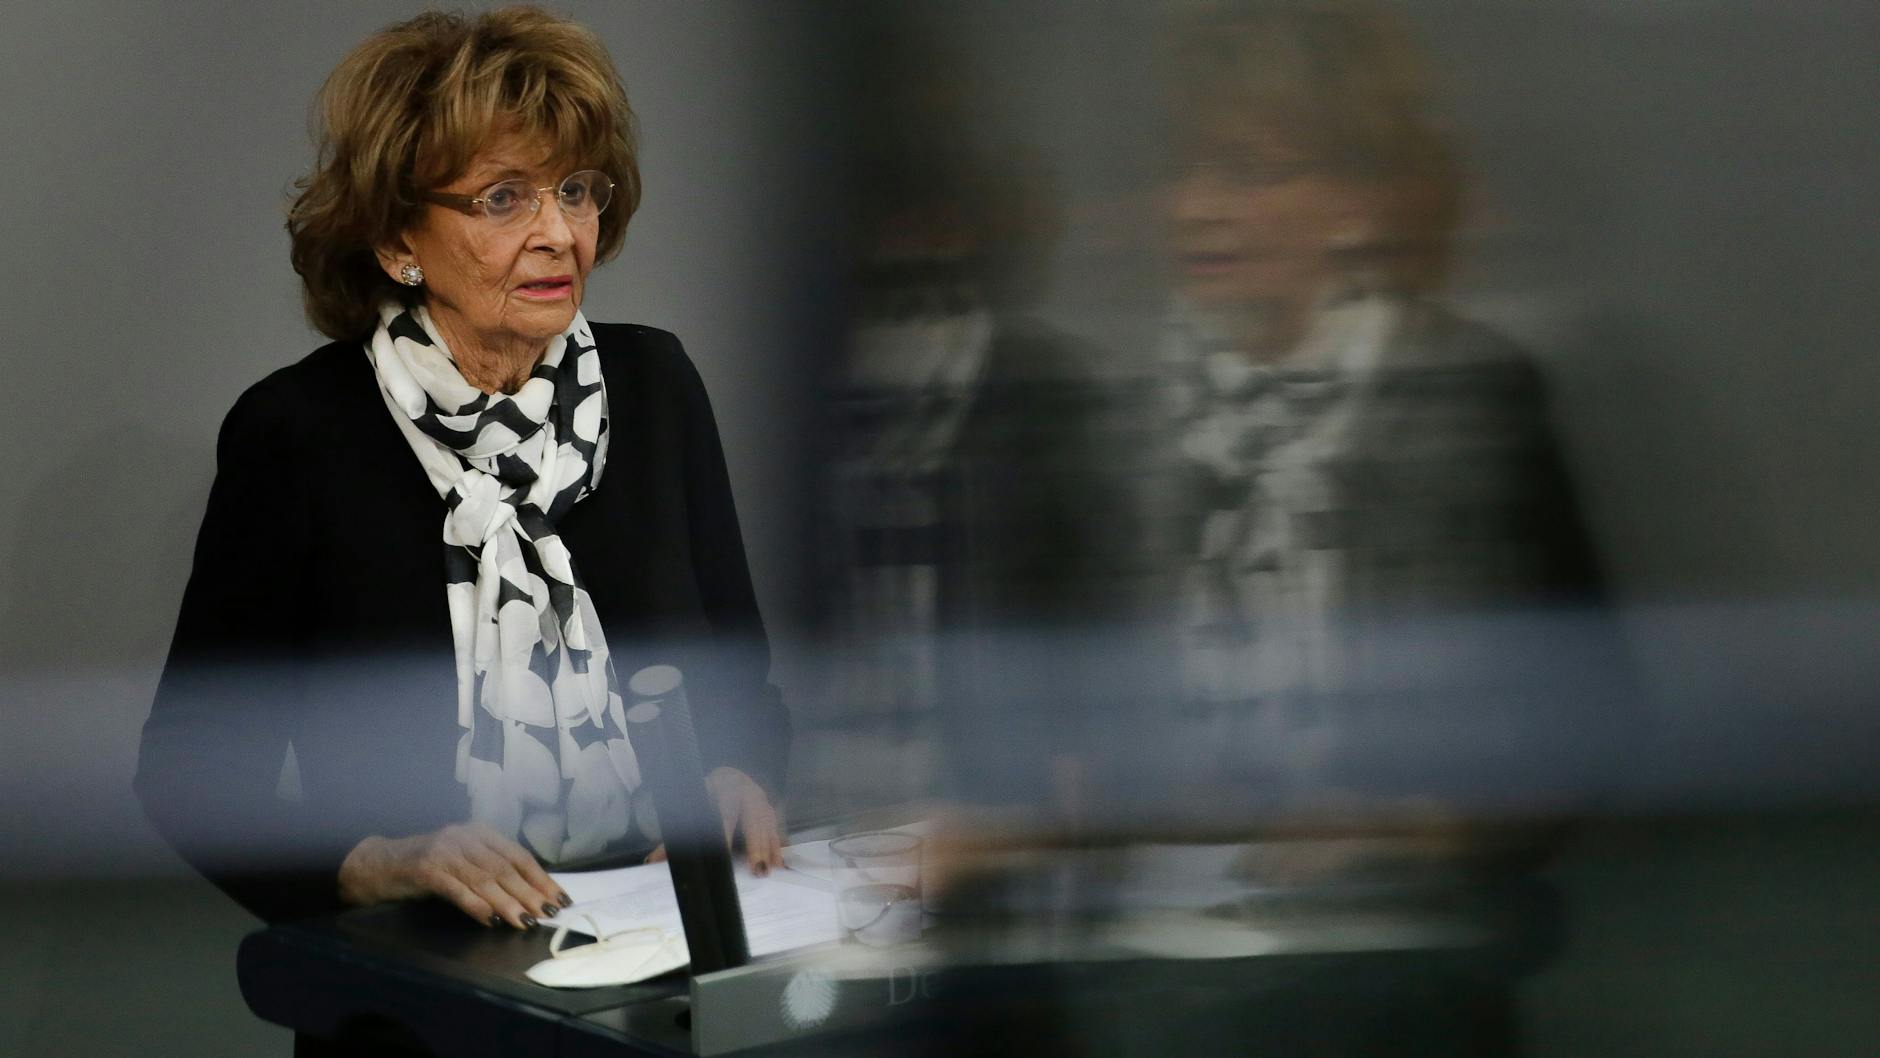 Die 88-jährige Holocaust-Überlebende Charlotte Knobloch sprach am Mittwoch im Bundestag.